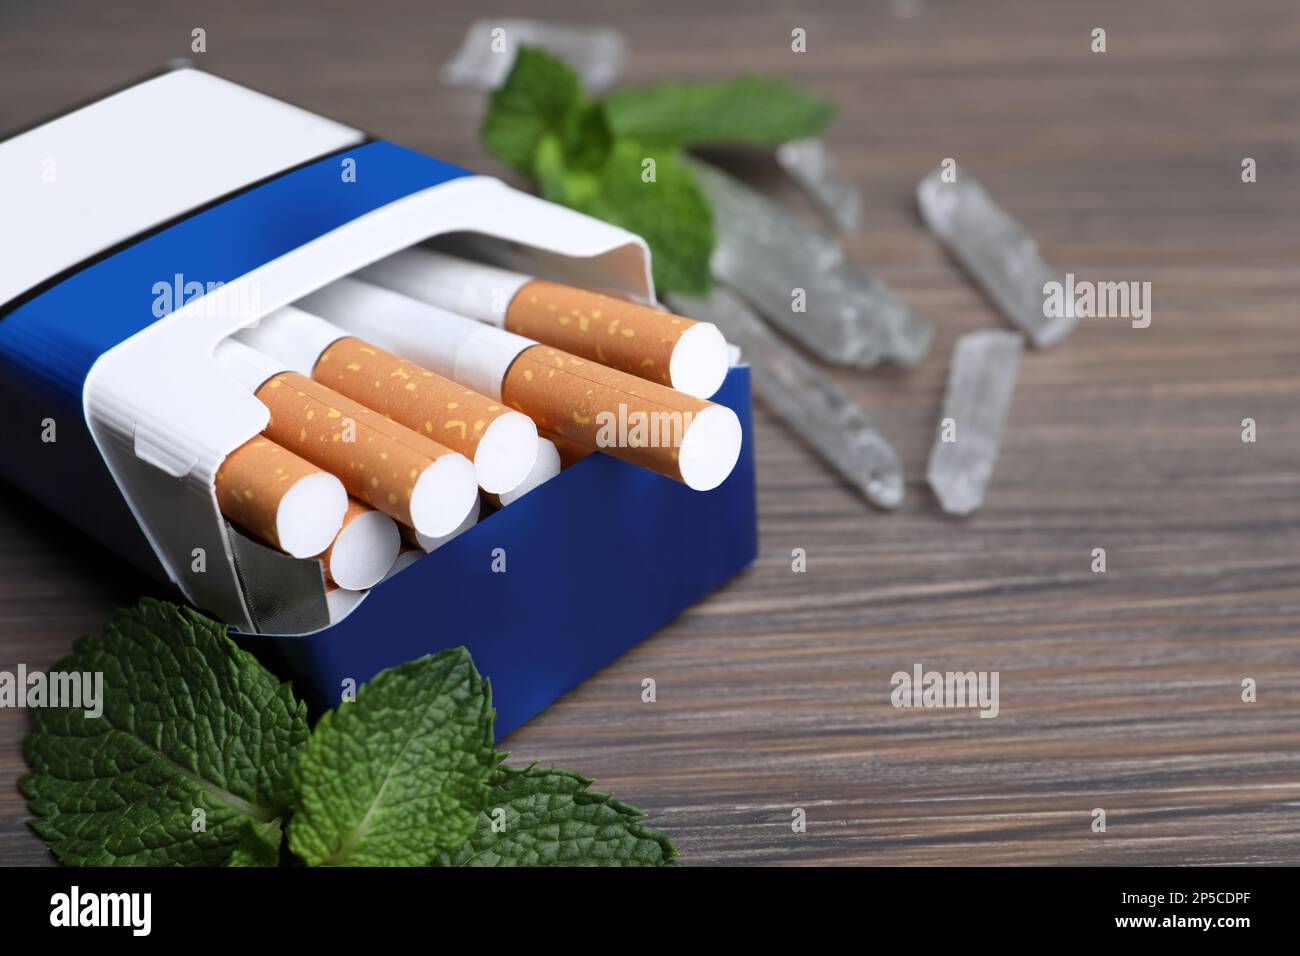 Paquet de cigarettes, de cristaux de menthol et de menthe sur table en bois, gros plan. Espace pour le texte Banque D'Images